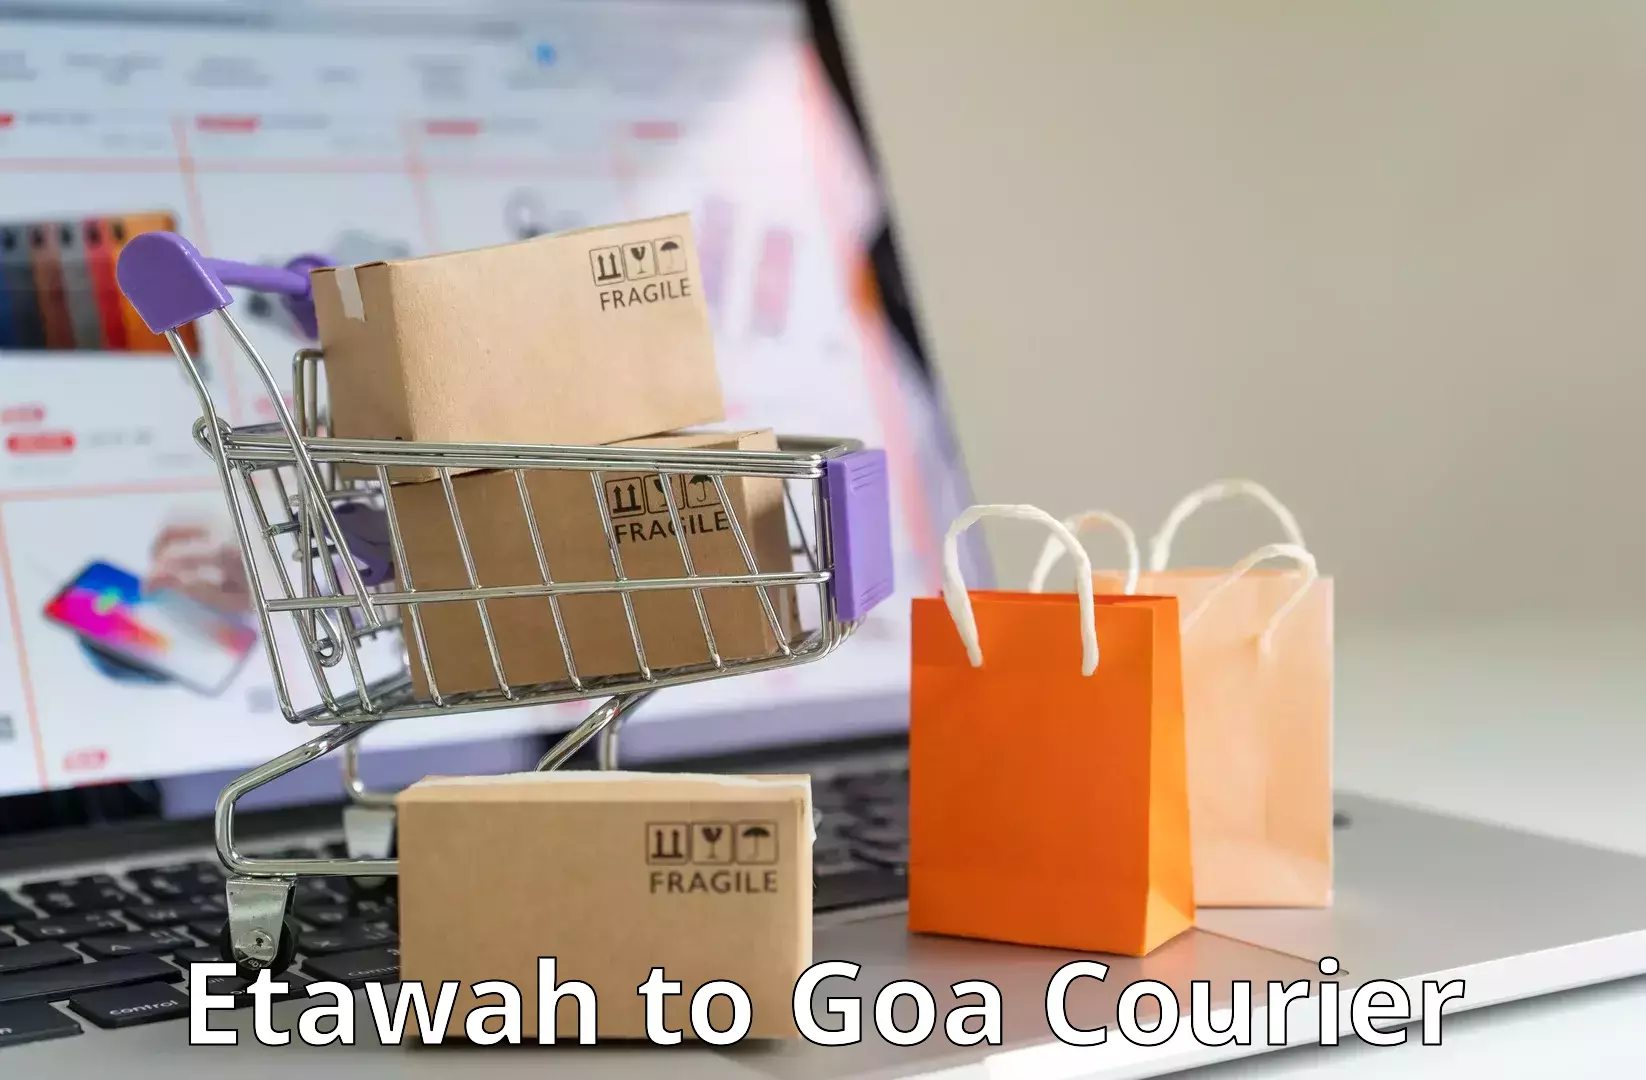 Overnight delivery Etawah to IIT Goa